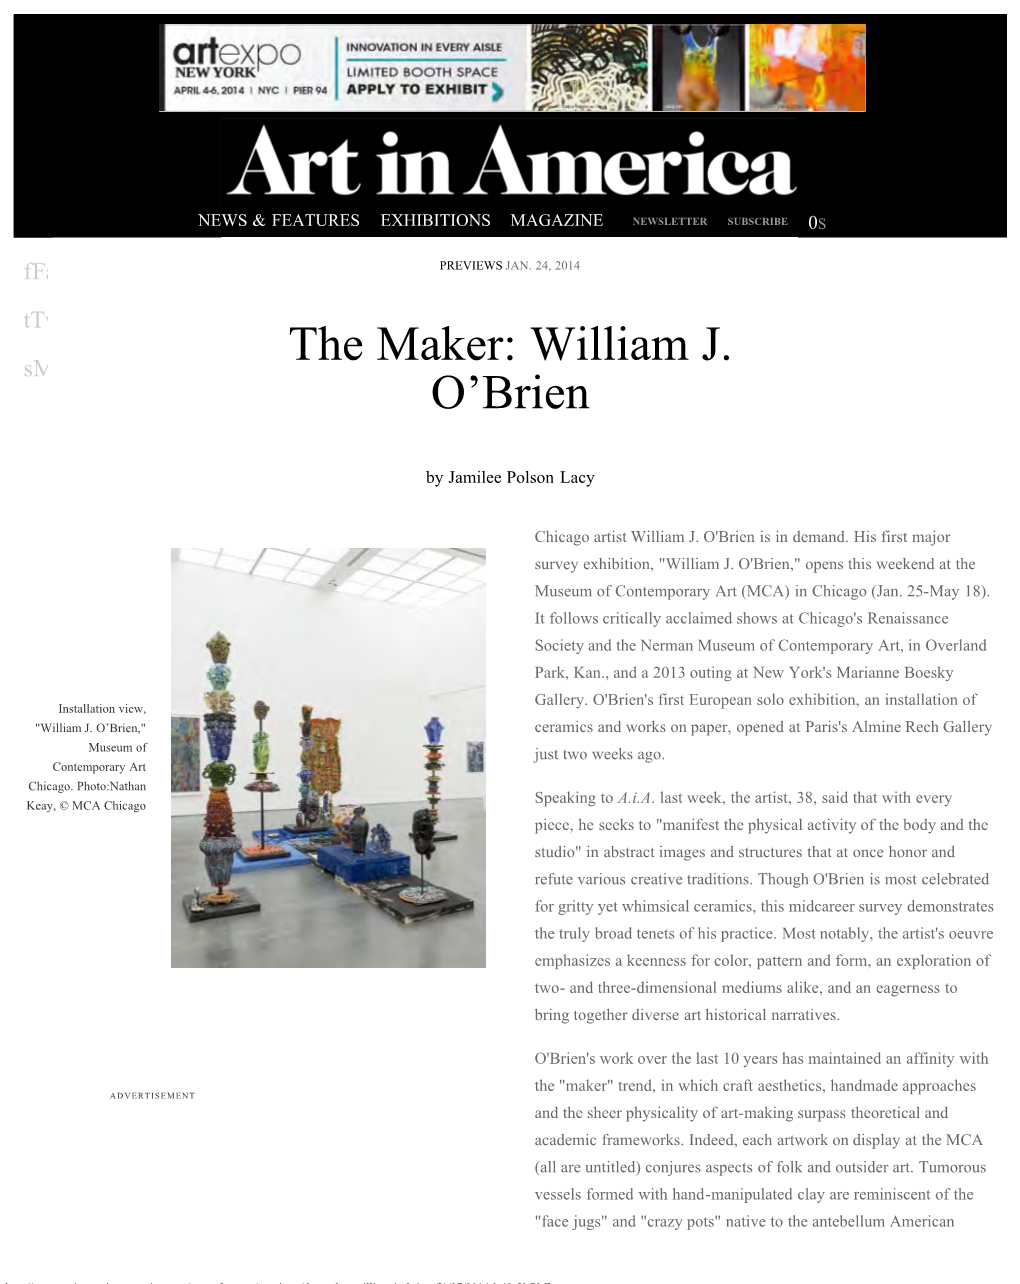 The Maker: William J. O'brien